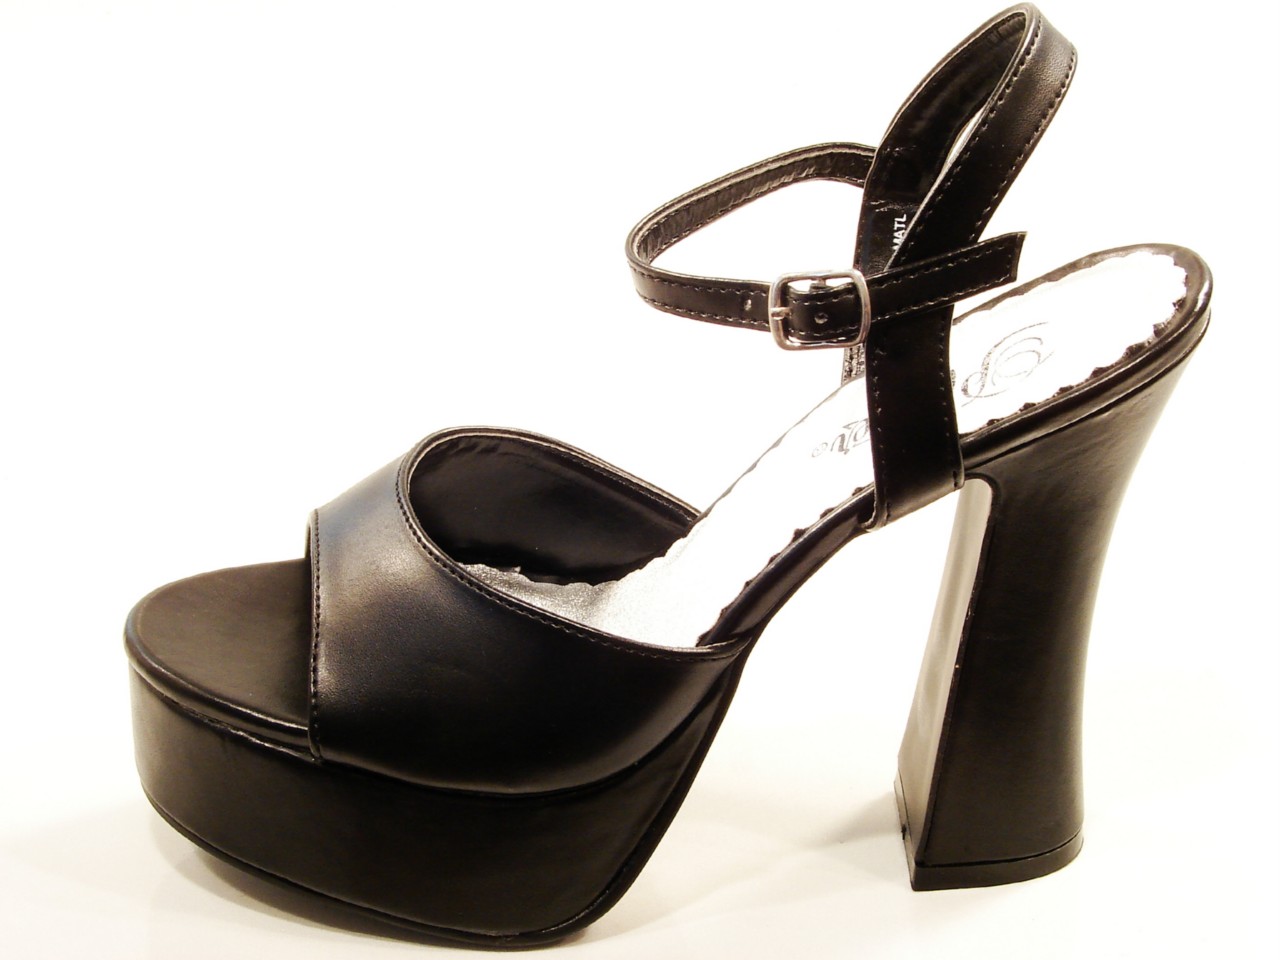 PLEASER Shoes Dolly Black High Heel Platform Sandals | eBay